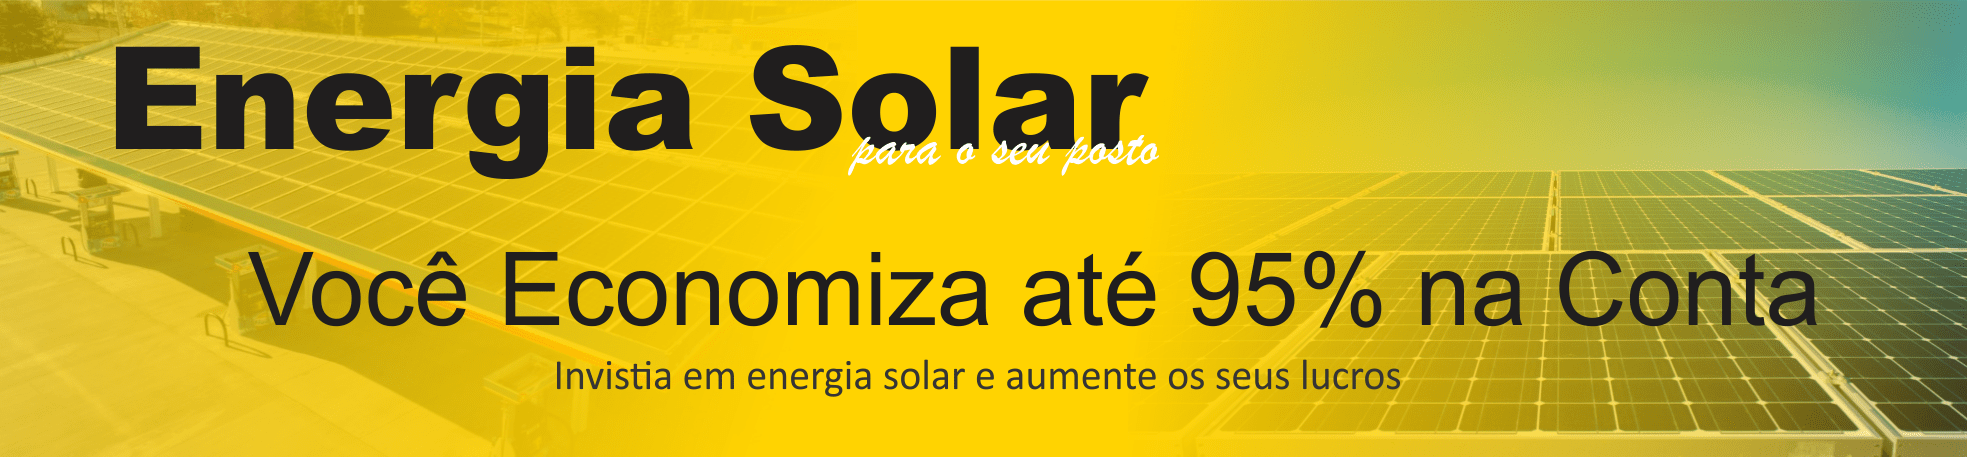 Energia Solar para Seu Posto